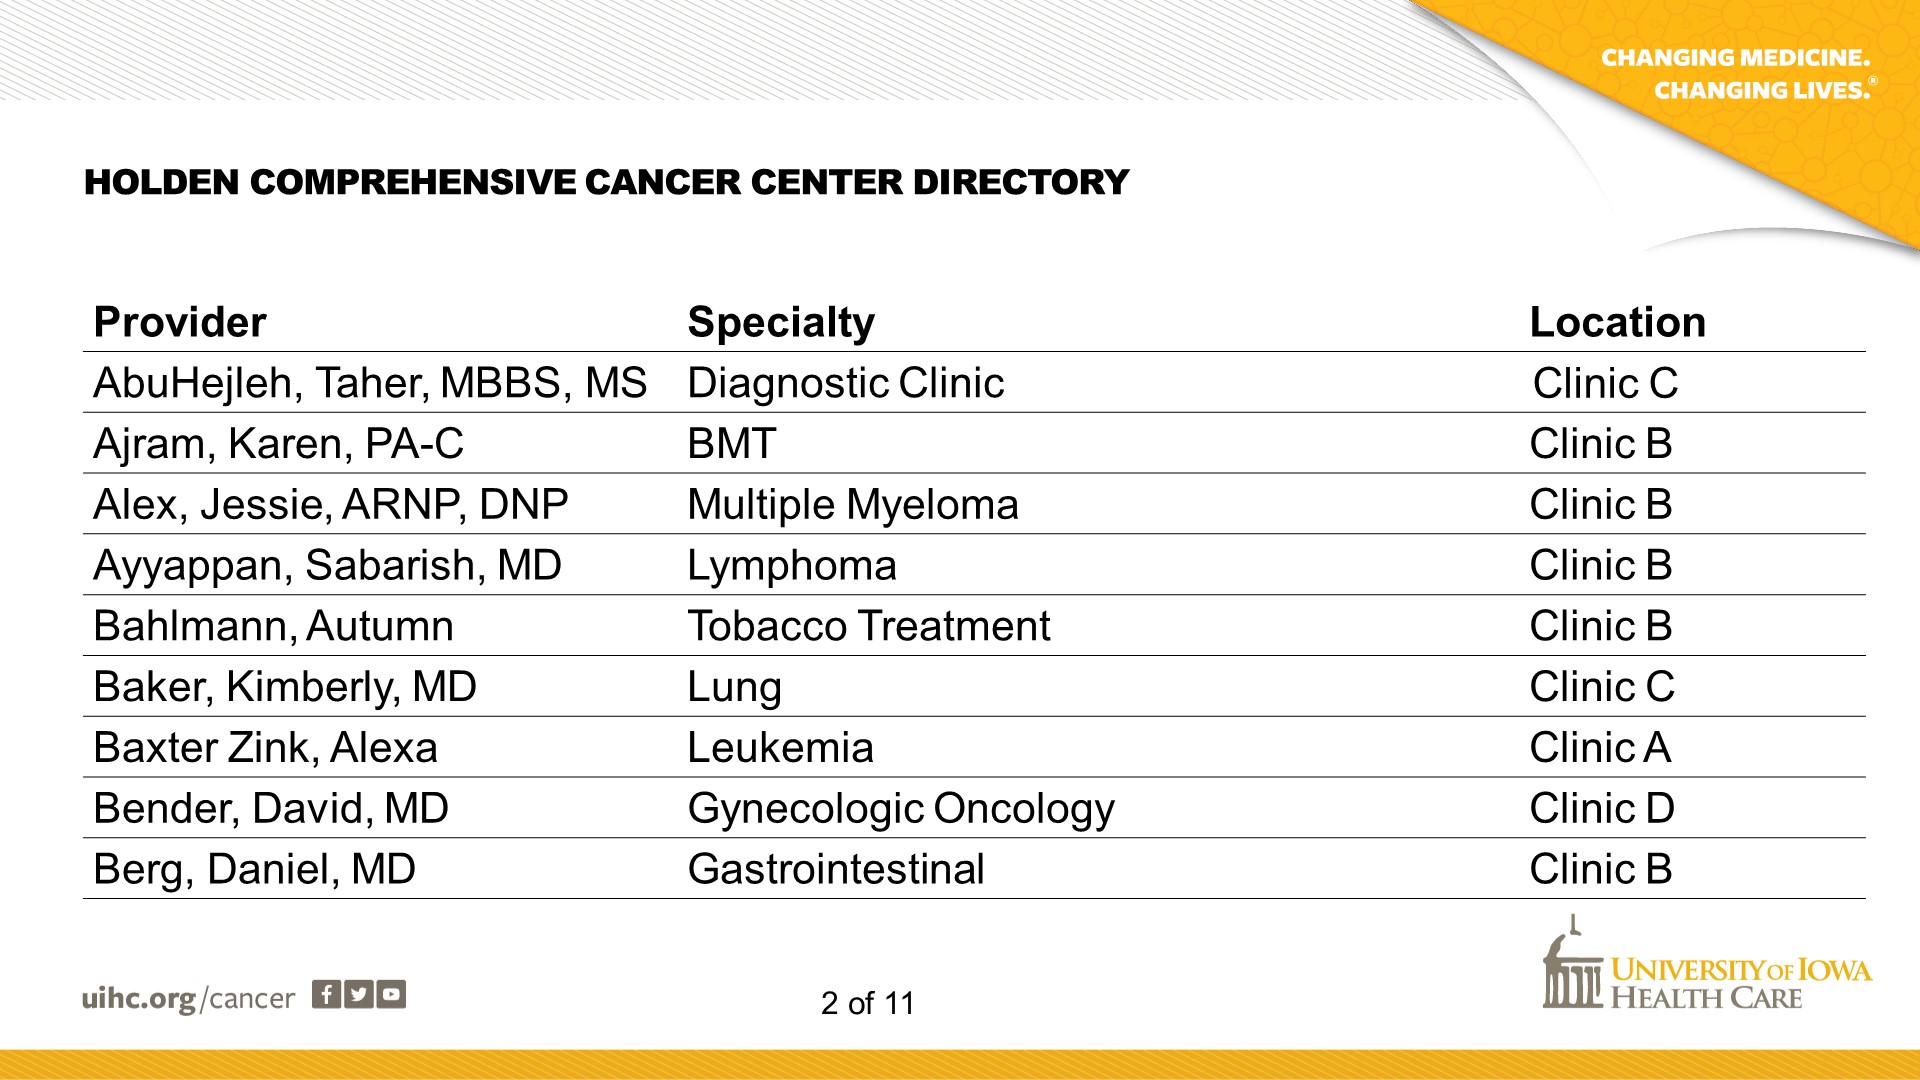 Cancer Center Directory - Slide 2